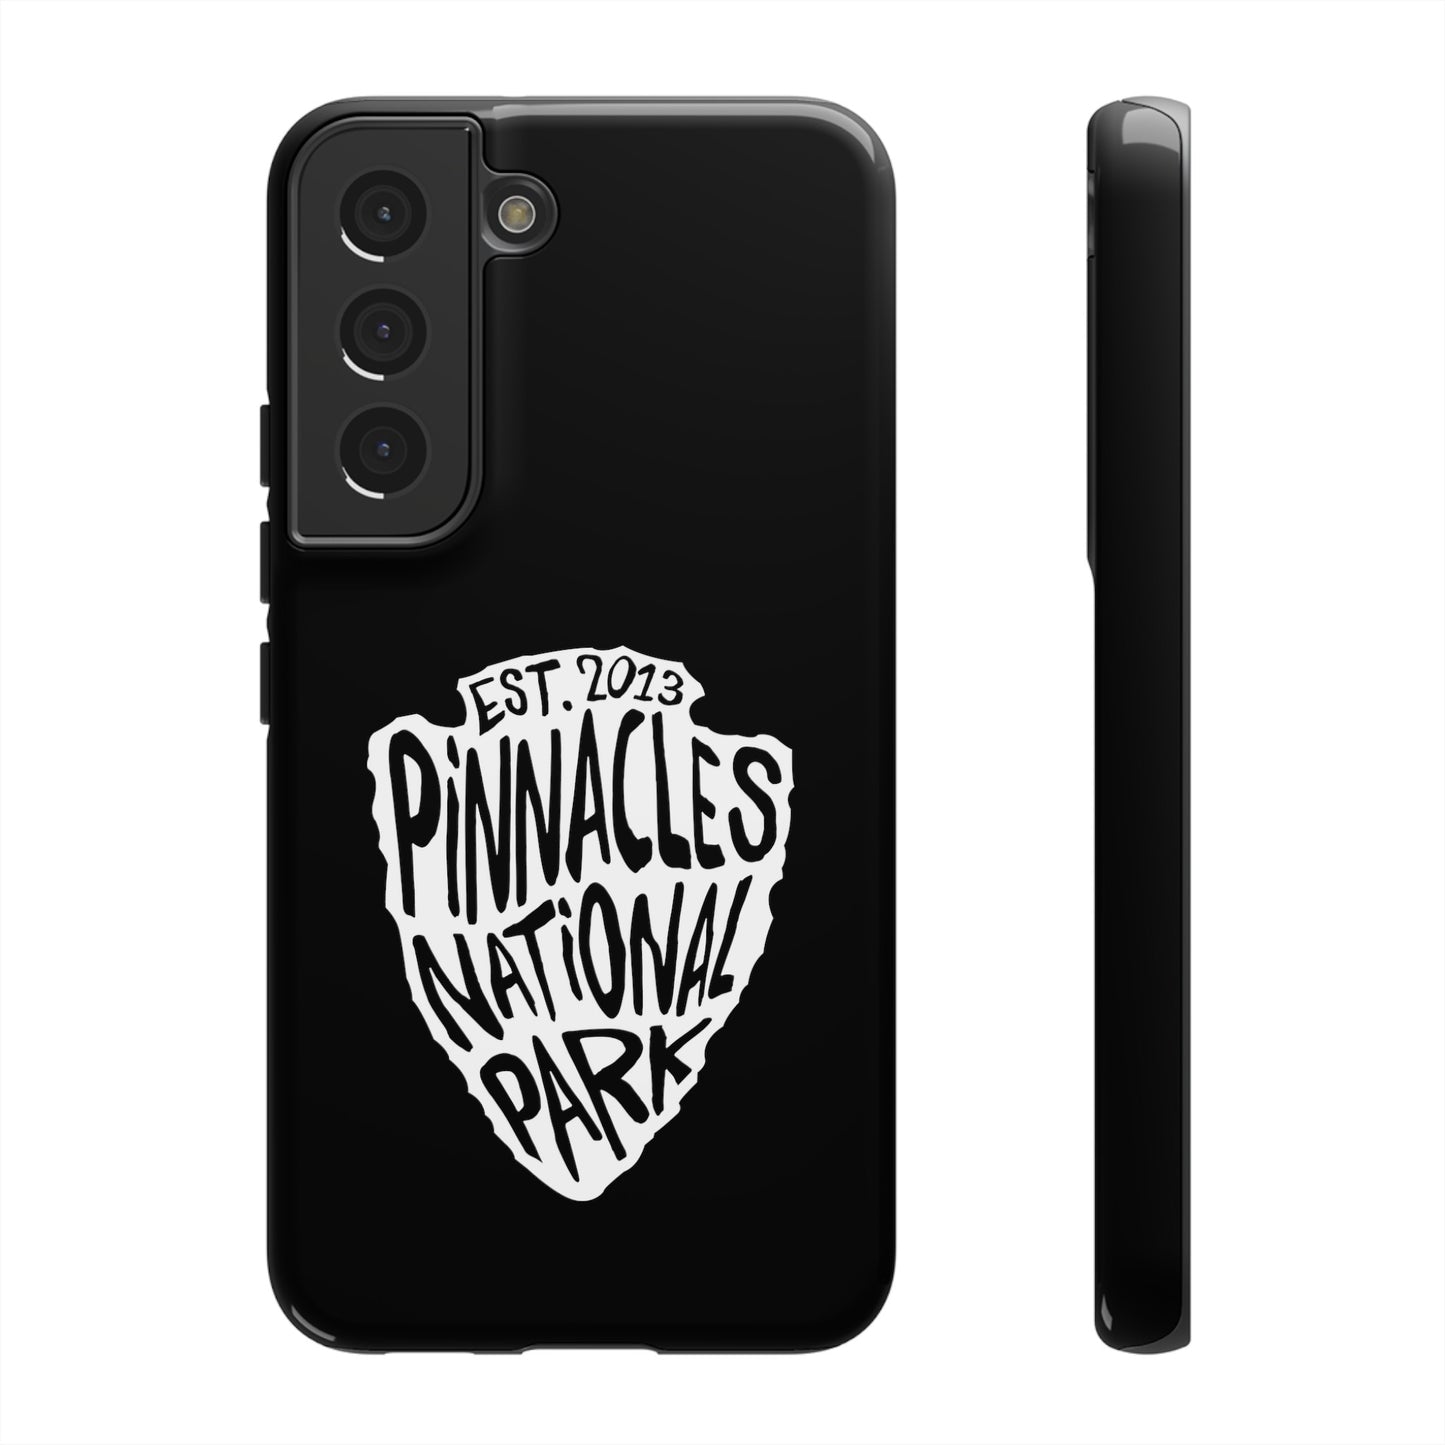 Pinnacles National Park Phone Case - Arrowhead Design